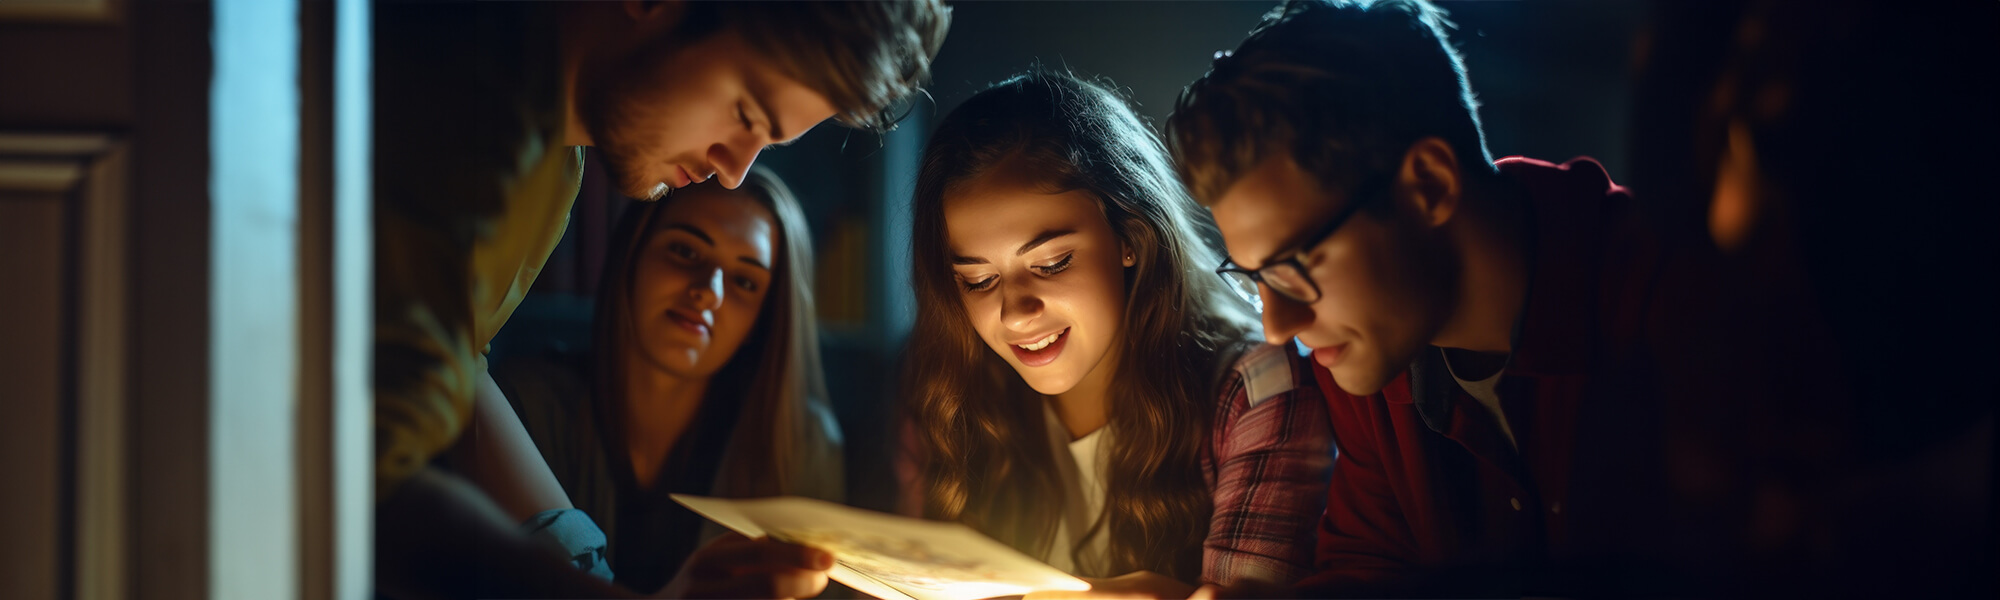 Vier junge Erwachsene, die konzentriert und gemeinsam über einen leuchtenden Hinweis im Escape Room gebückt sind, während sie ein Rätsel lösen.